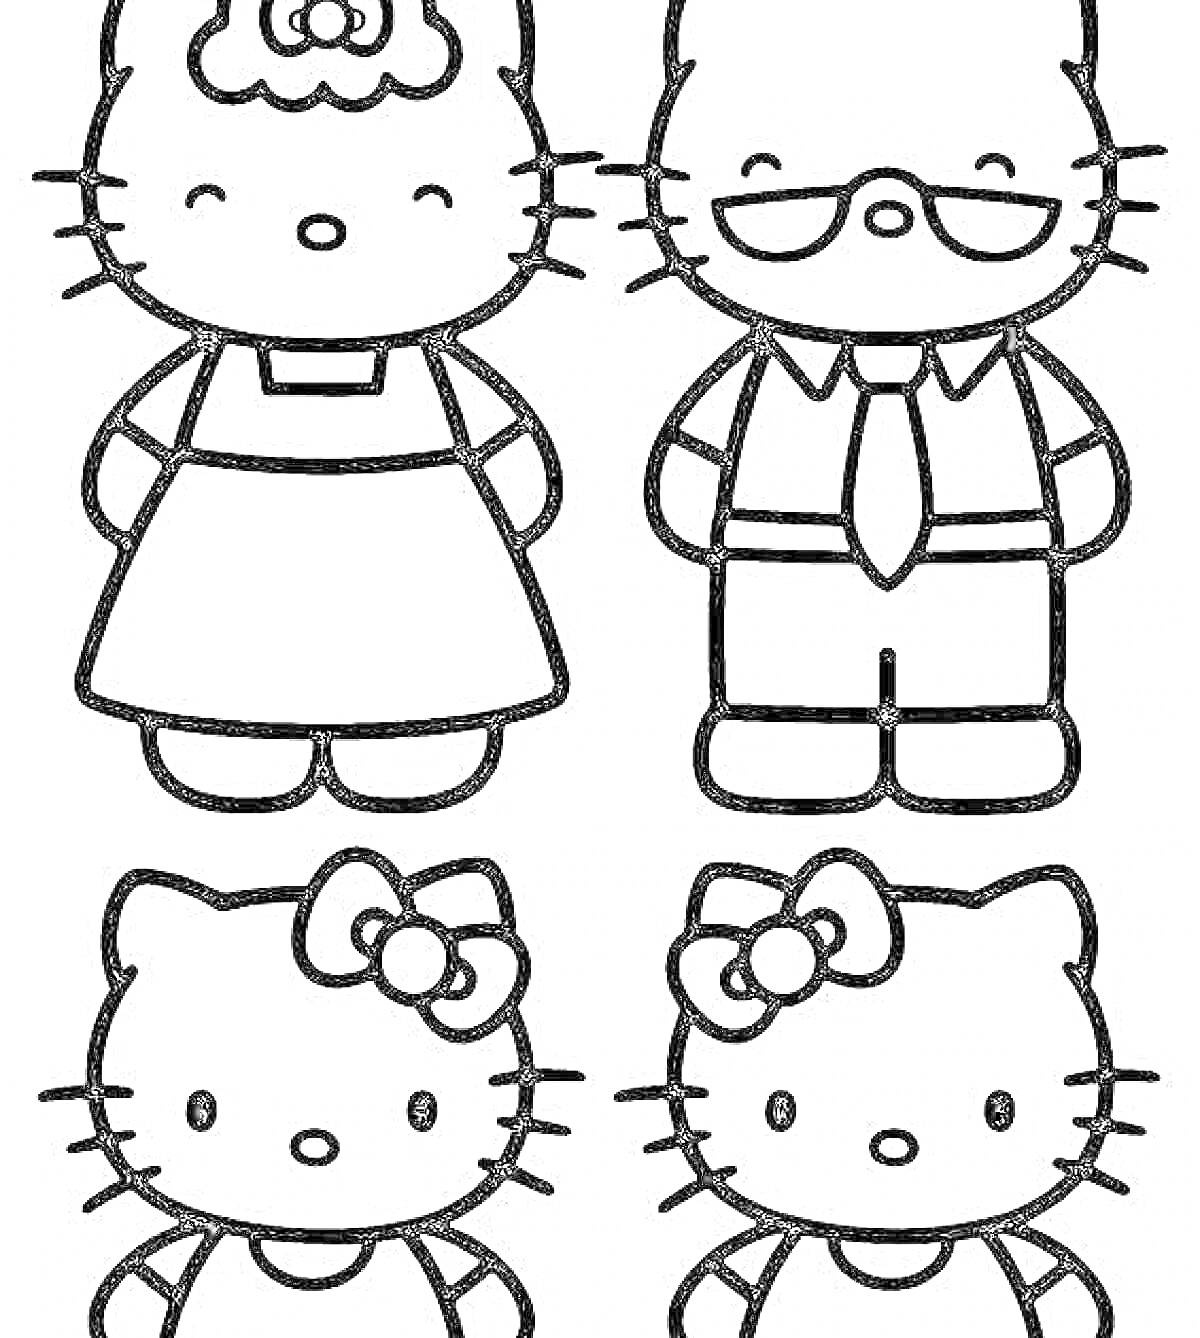 Раскраска Hello Kitty семья: девочка в платье с цветком на ушке, мальчик в очках и галстуке, девочка с бантиком над левым ушком, девочка с бантиком над правым ушком.